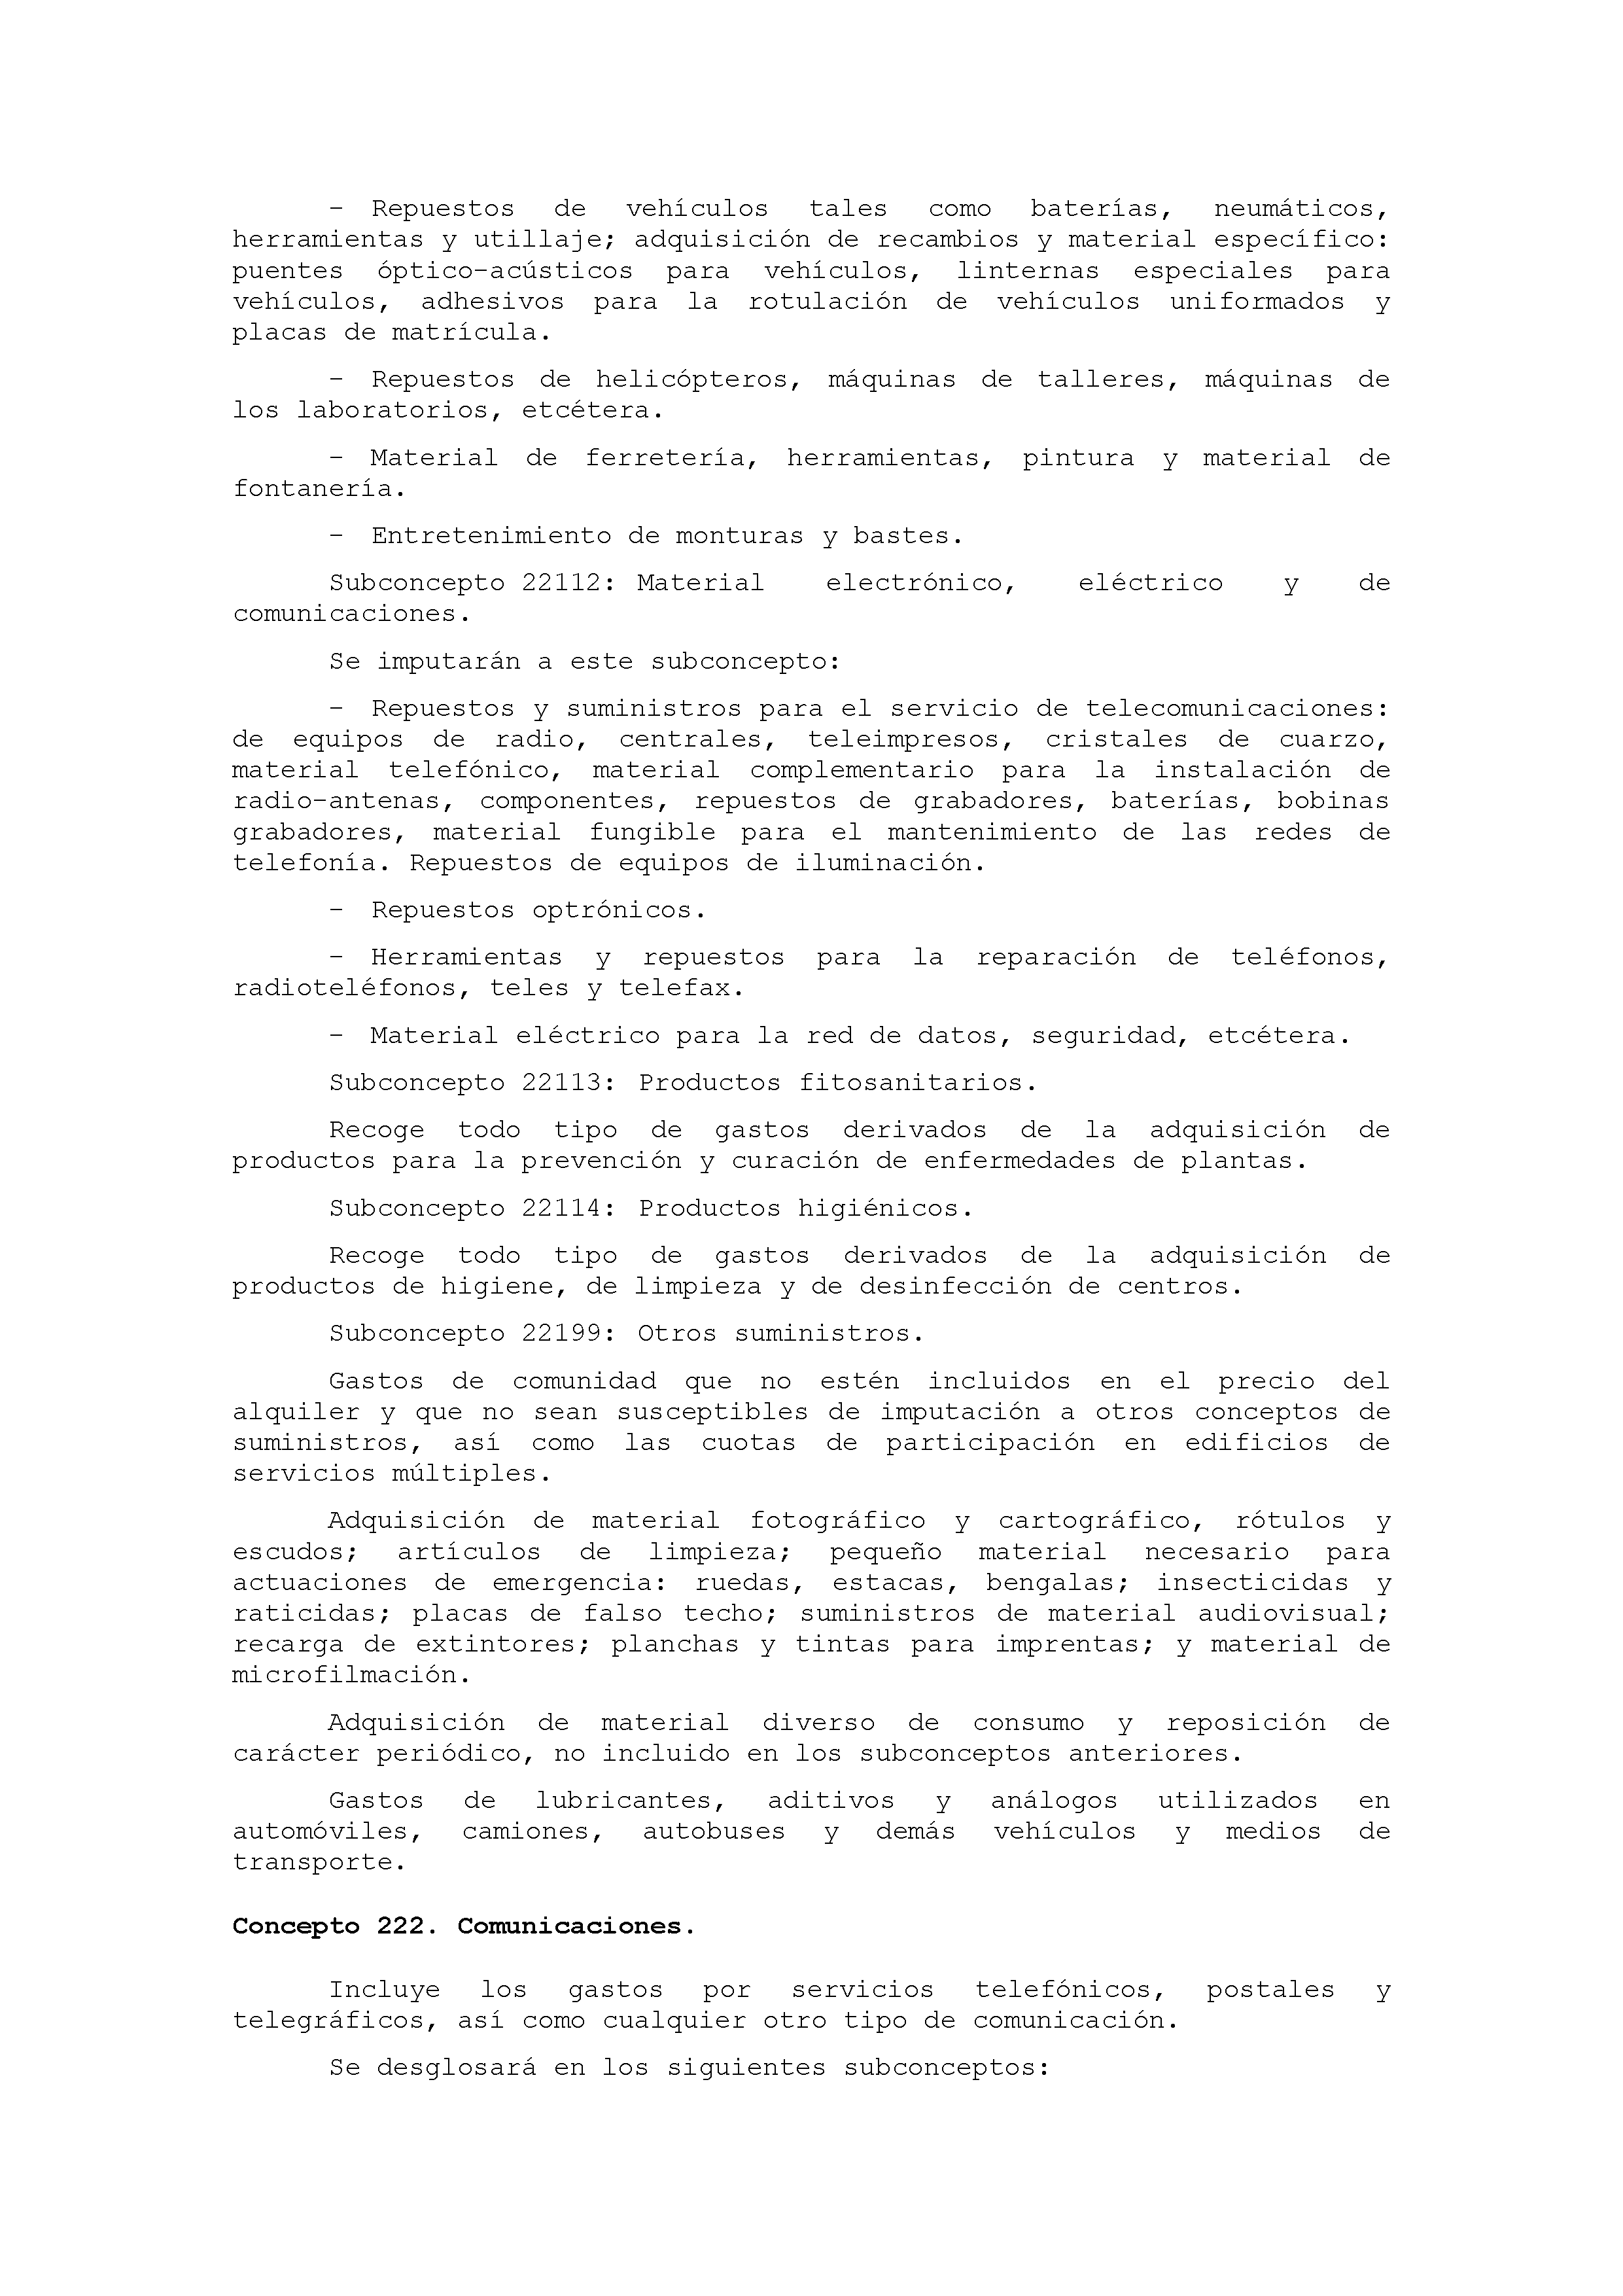 ANEXO IX CÓDIGO DE LA CLASIFICACIÓN ECONÓMICA DE LOS GASTOS PÚBLICOS Pag 19